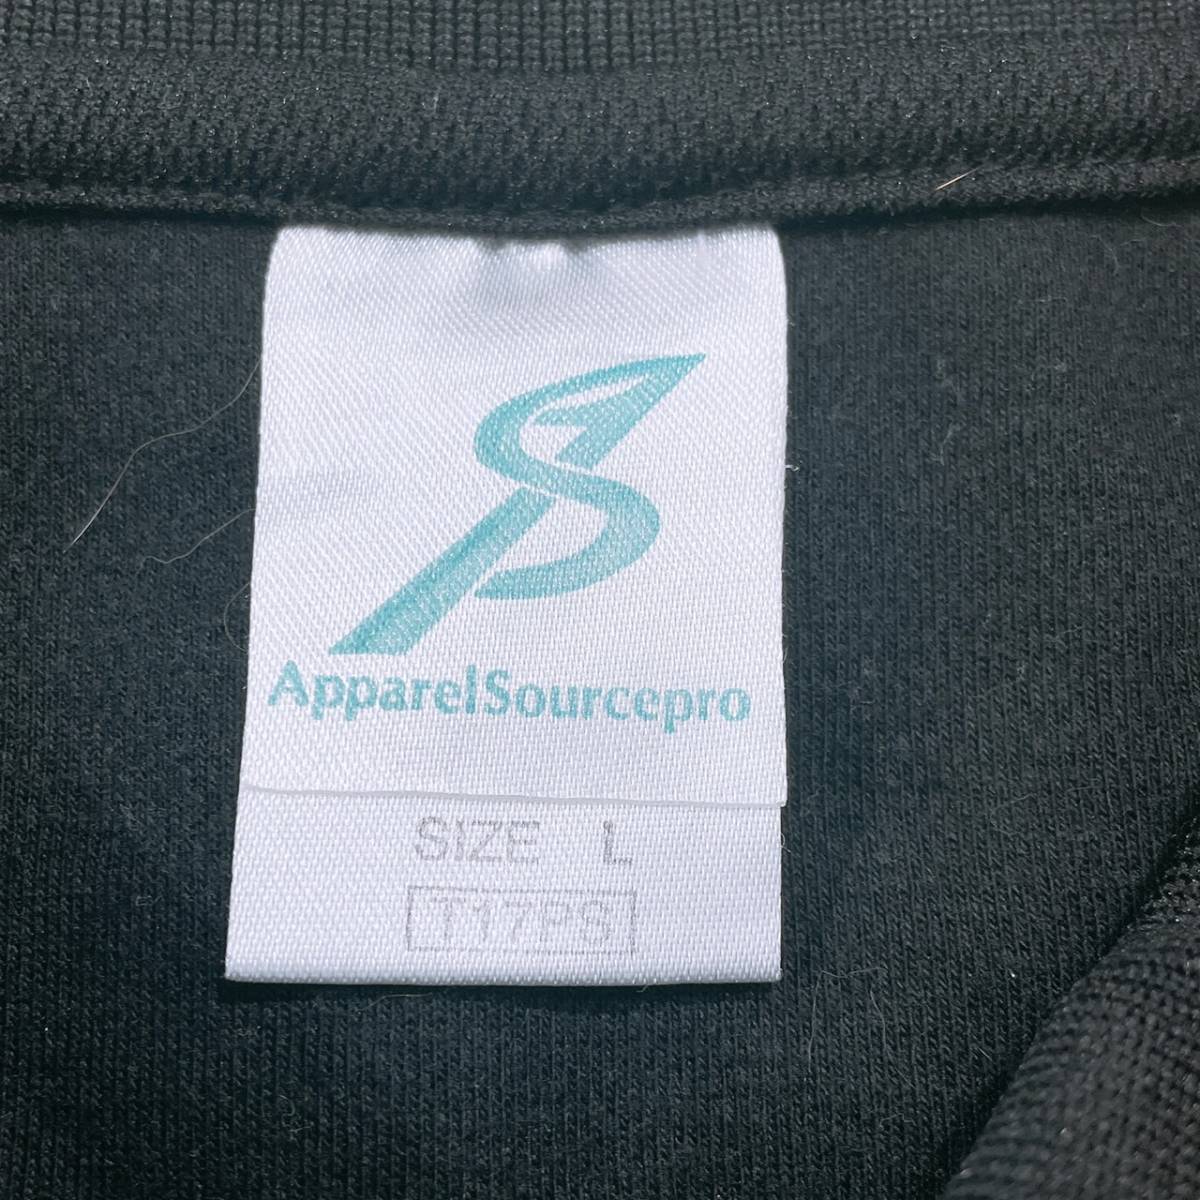 【21435】 Apparel Source Pro アパレルソースプロ トップス シャツ 半袖シャツ ポロシャツ ボタンダウン 胸ポケット ブラック 黒 L